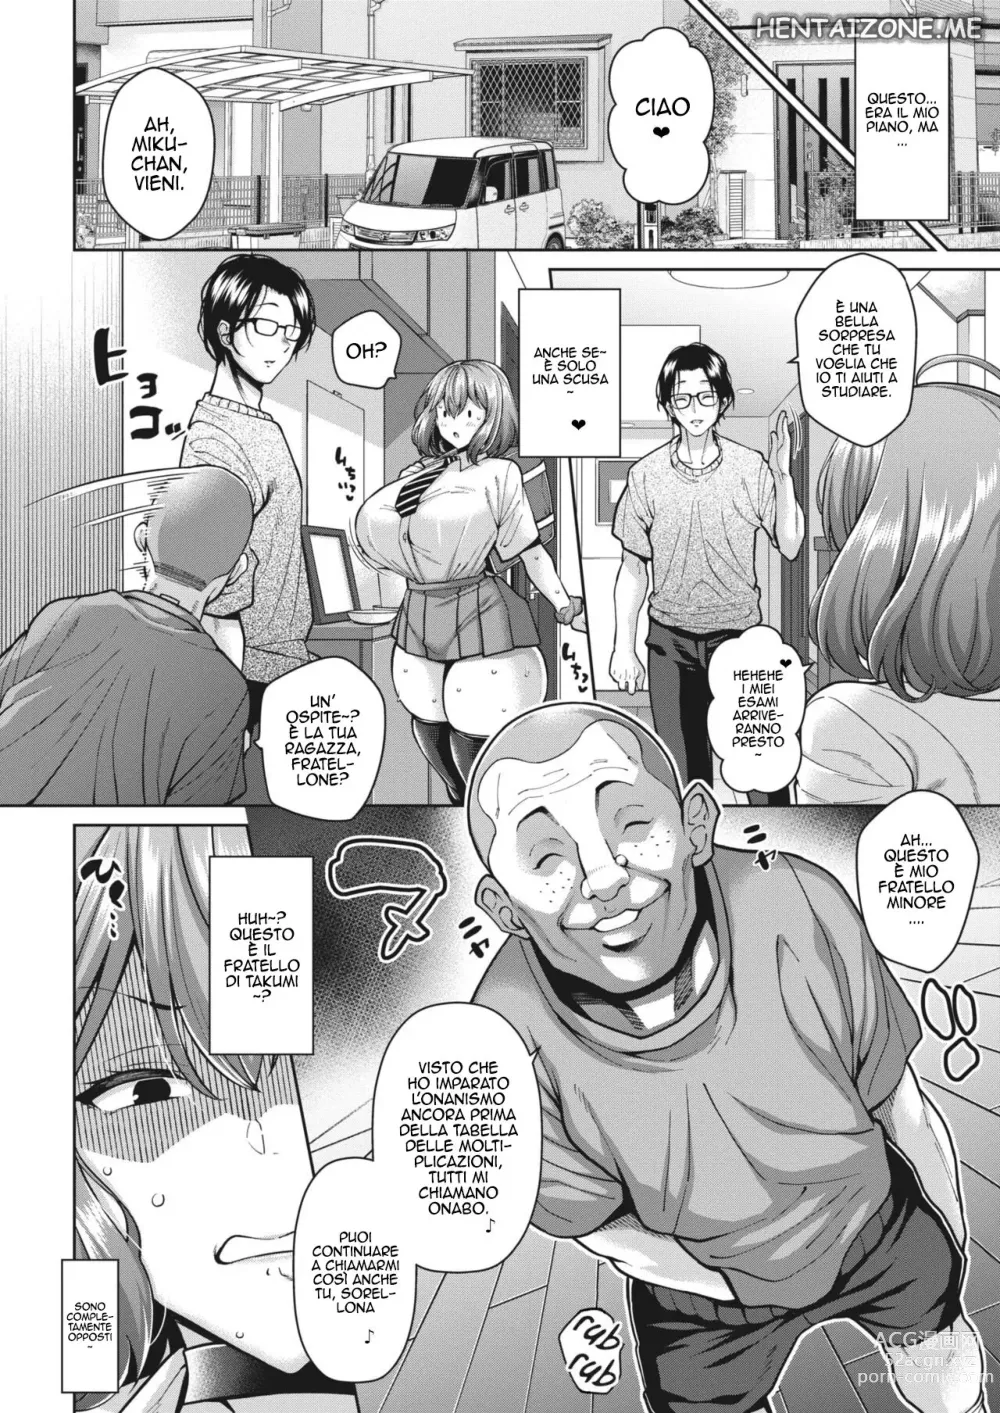 Page 2 of manga Attenzione ad Onabo